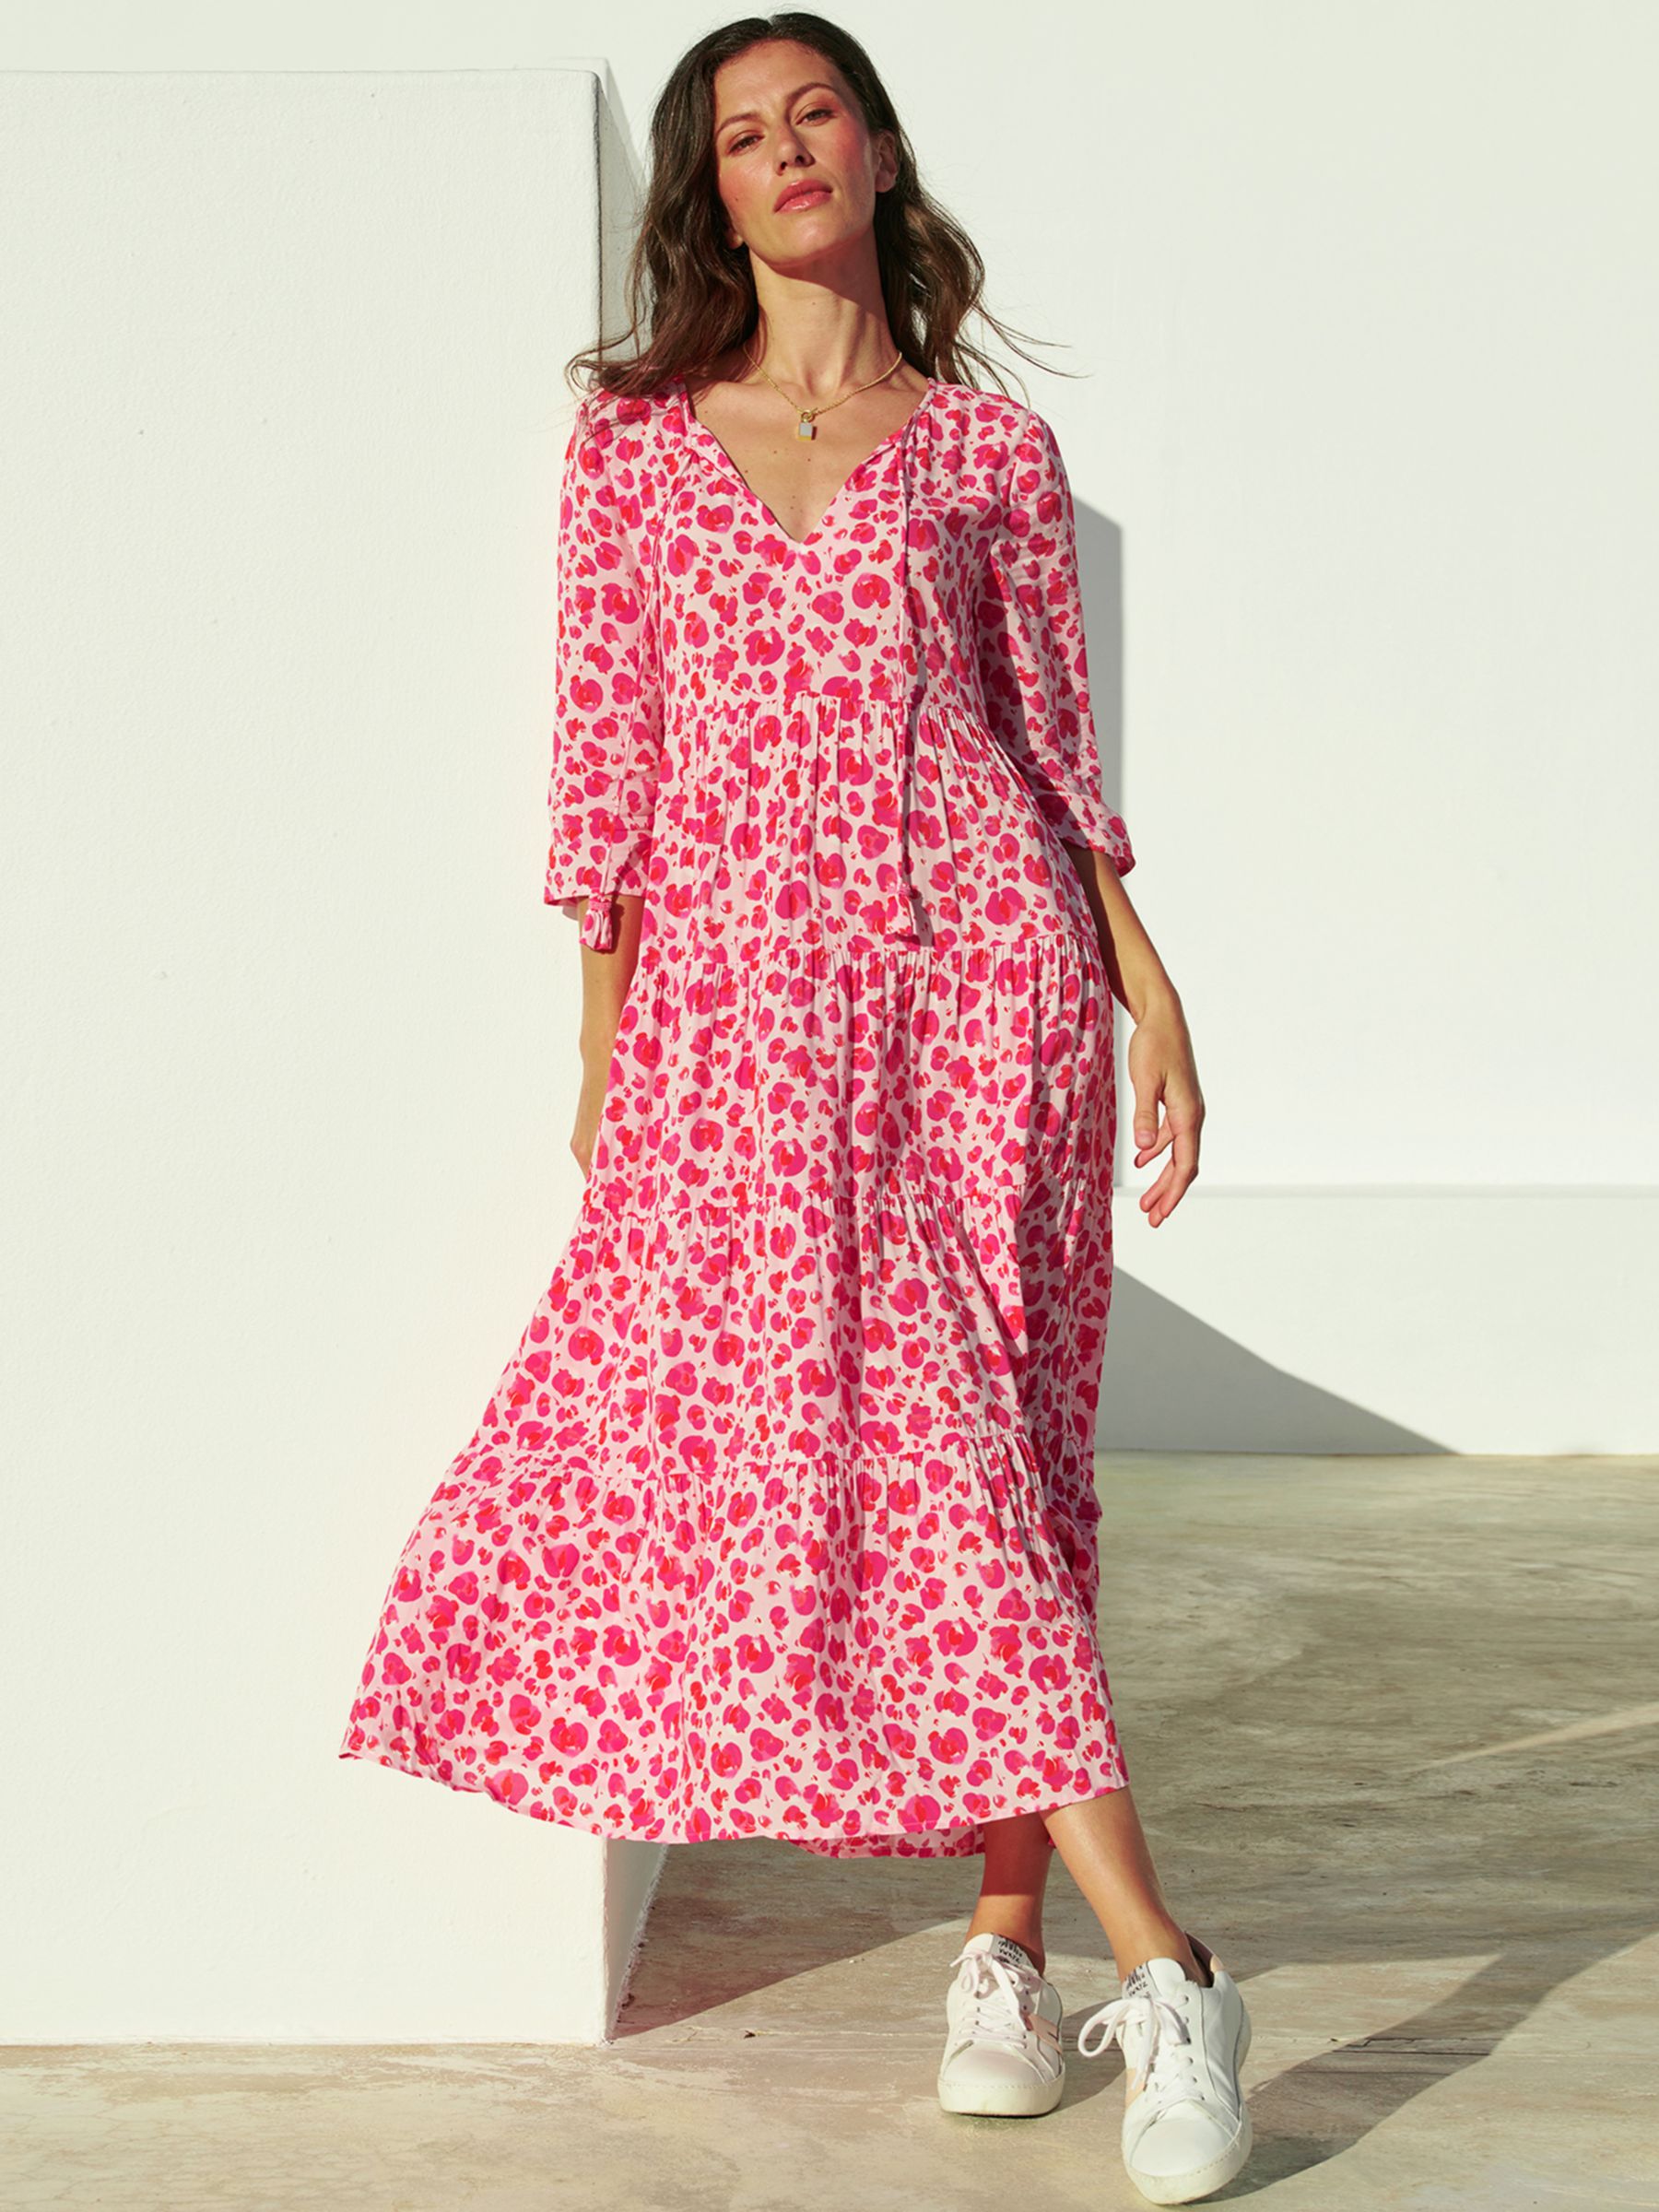 Aspiga Emma Light Weight Dress, Cheetah Pink at John Lewis & Partners